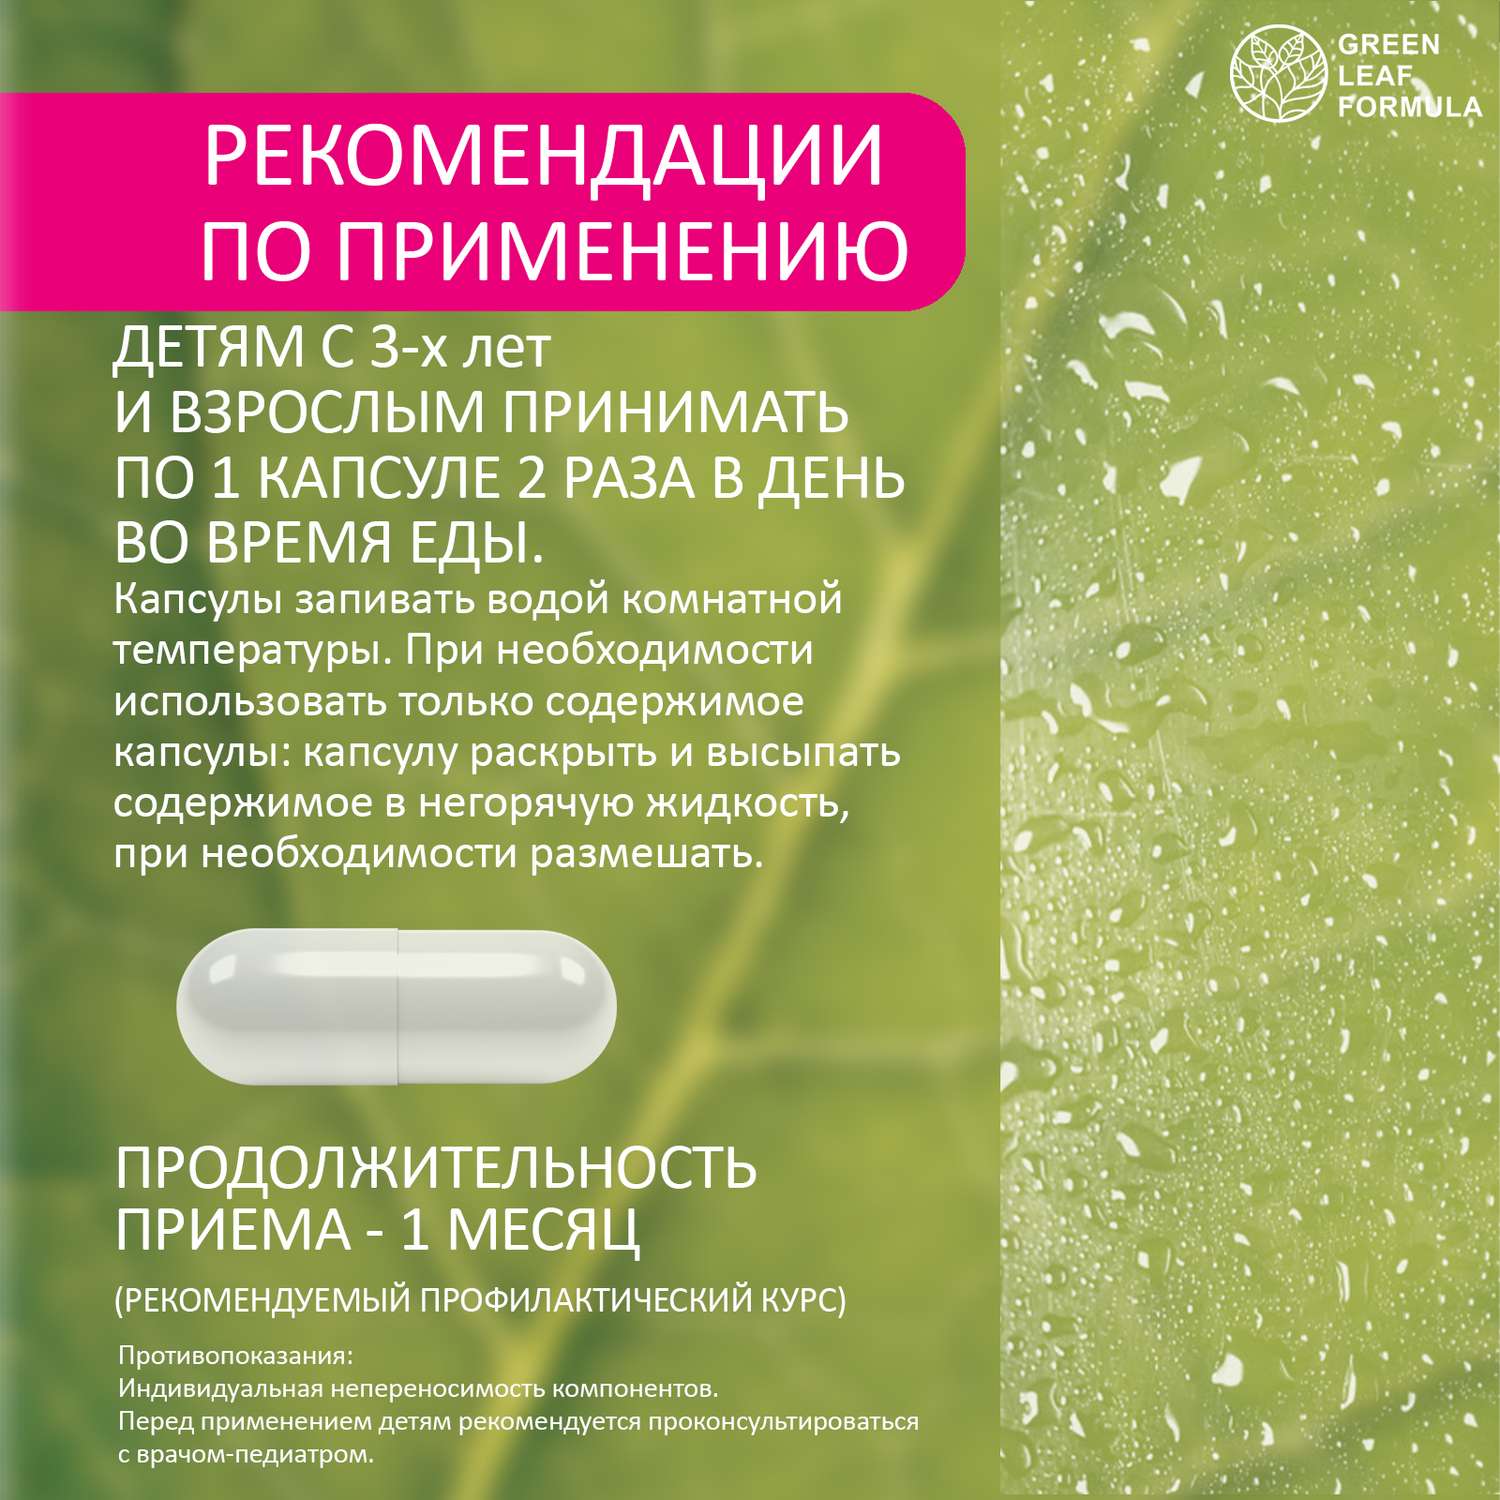 Пробиотики и фолиевая кислота Green Leaf Formula витамины для детей кальций Д3 витамины женские для беременных и кормящих 2 банки - фото 10